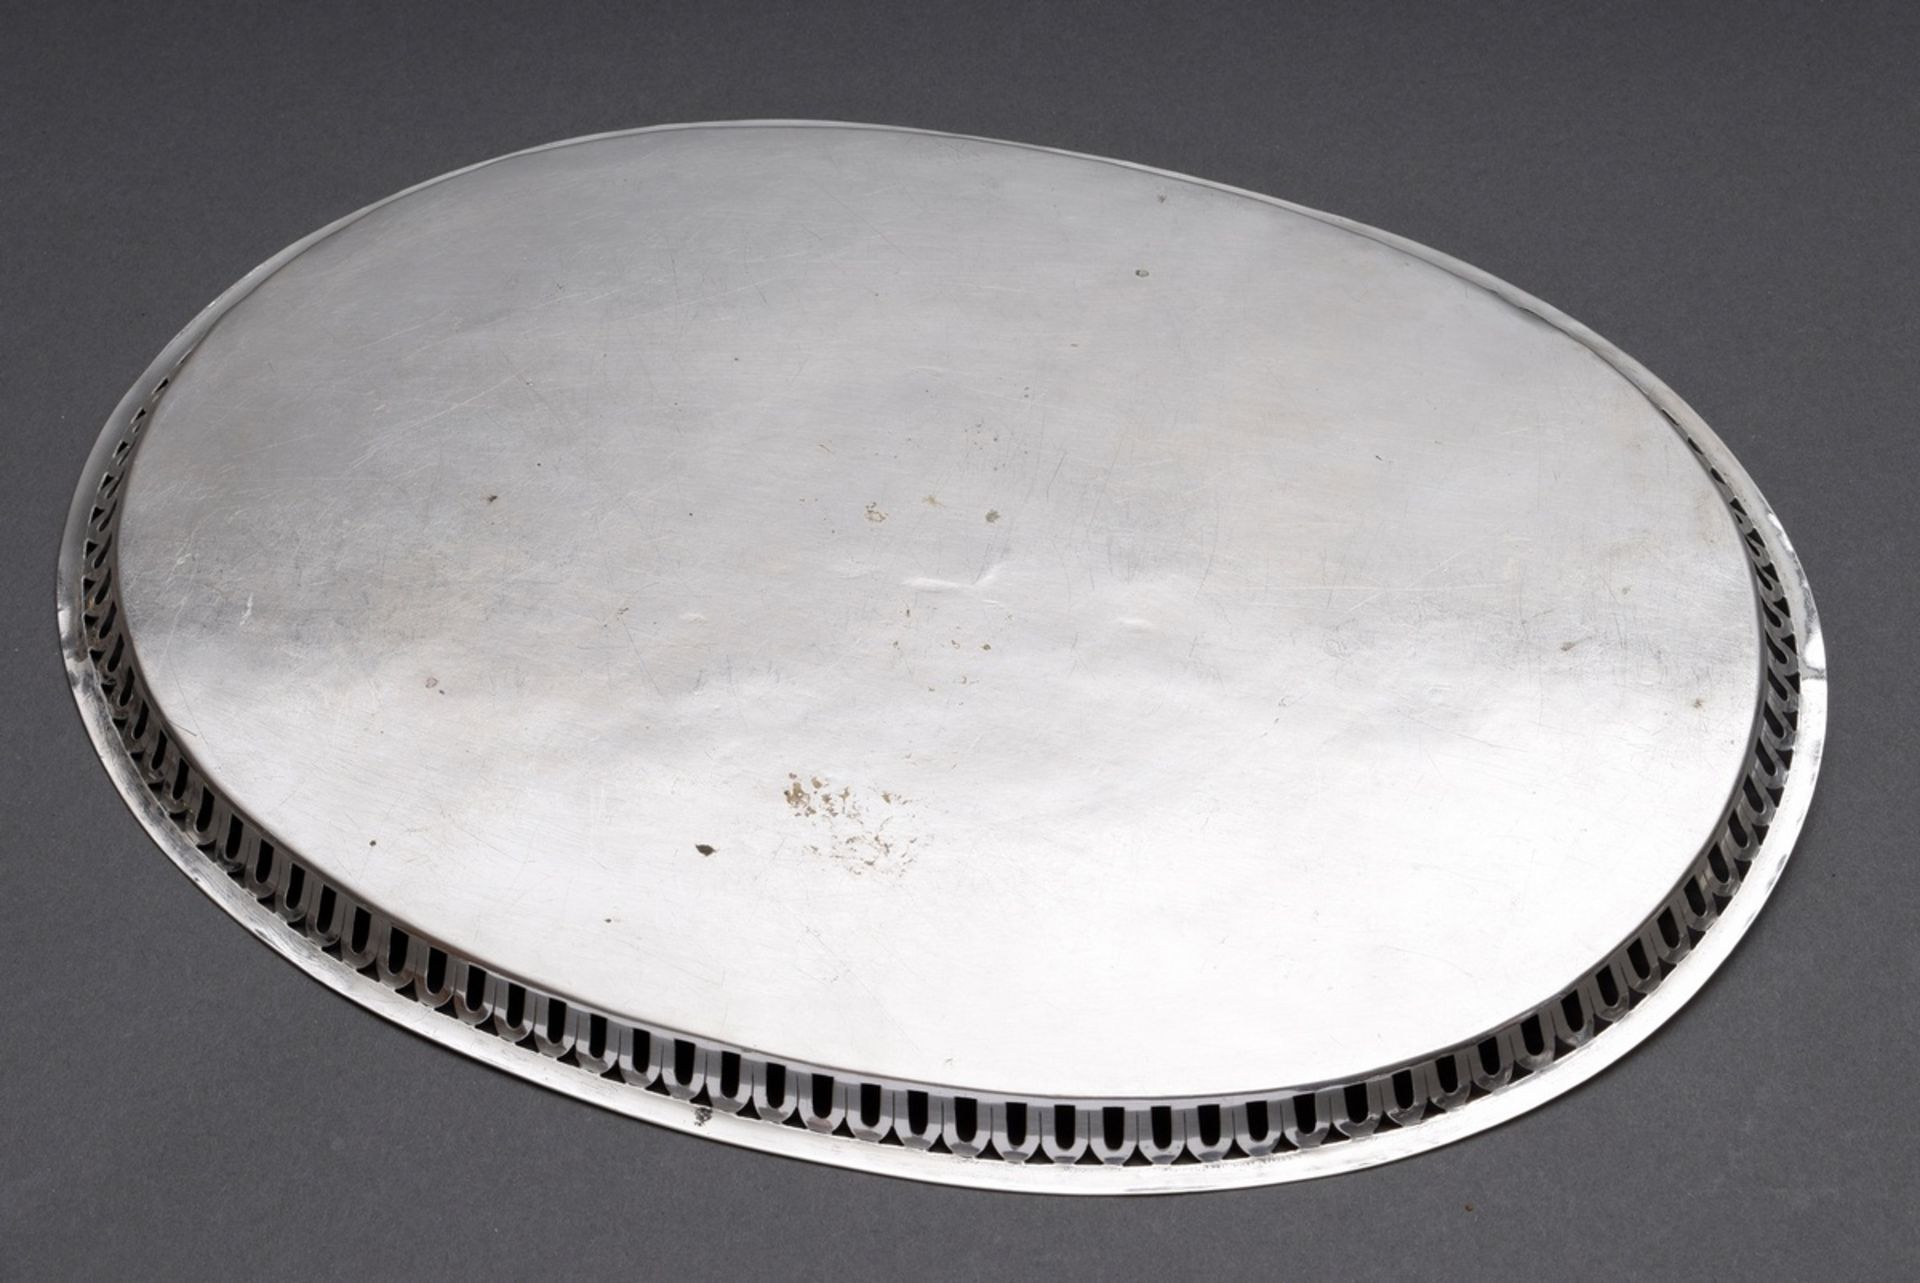 Ovales Tablett mit durchbrochenem Rand, MZ: CK, Beschau undeutlich, um 1800 (?), Silber (Tremuliers - Bild 3 aus 3